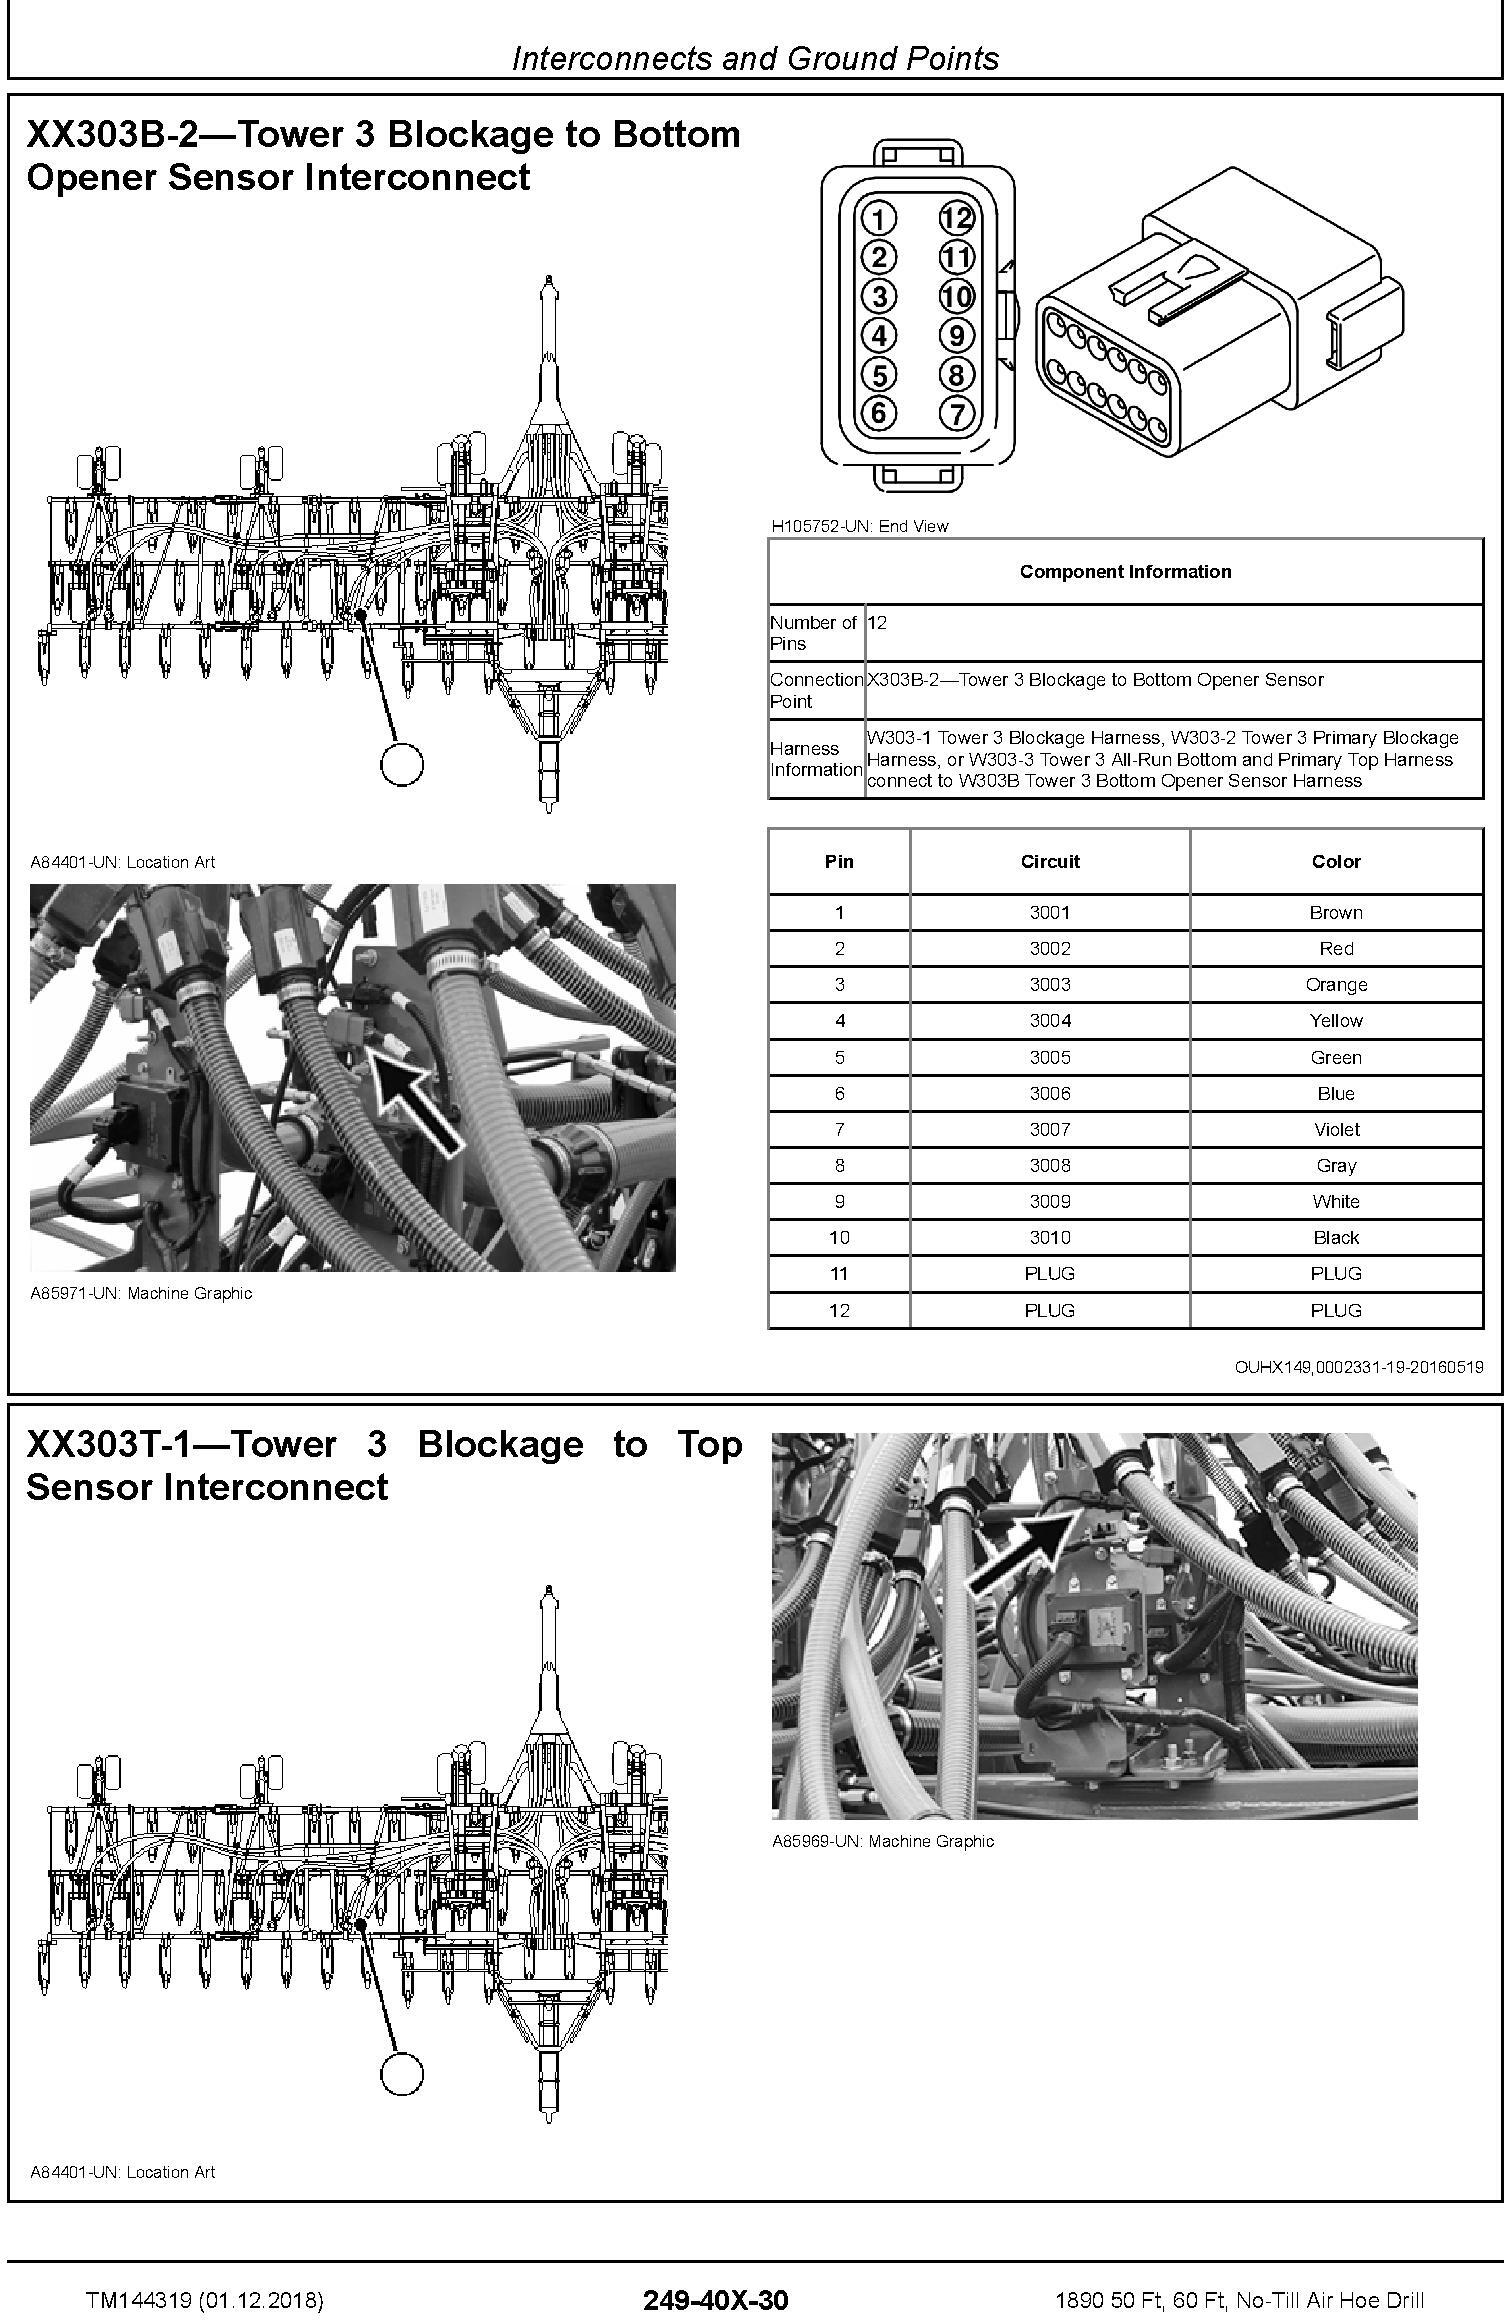 John Deere 1890 50 Ft, 60 Ft, No-Till Air Hoe Drill Diagnostic Technical Service Manual (TM144319) - 1